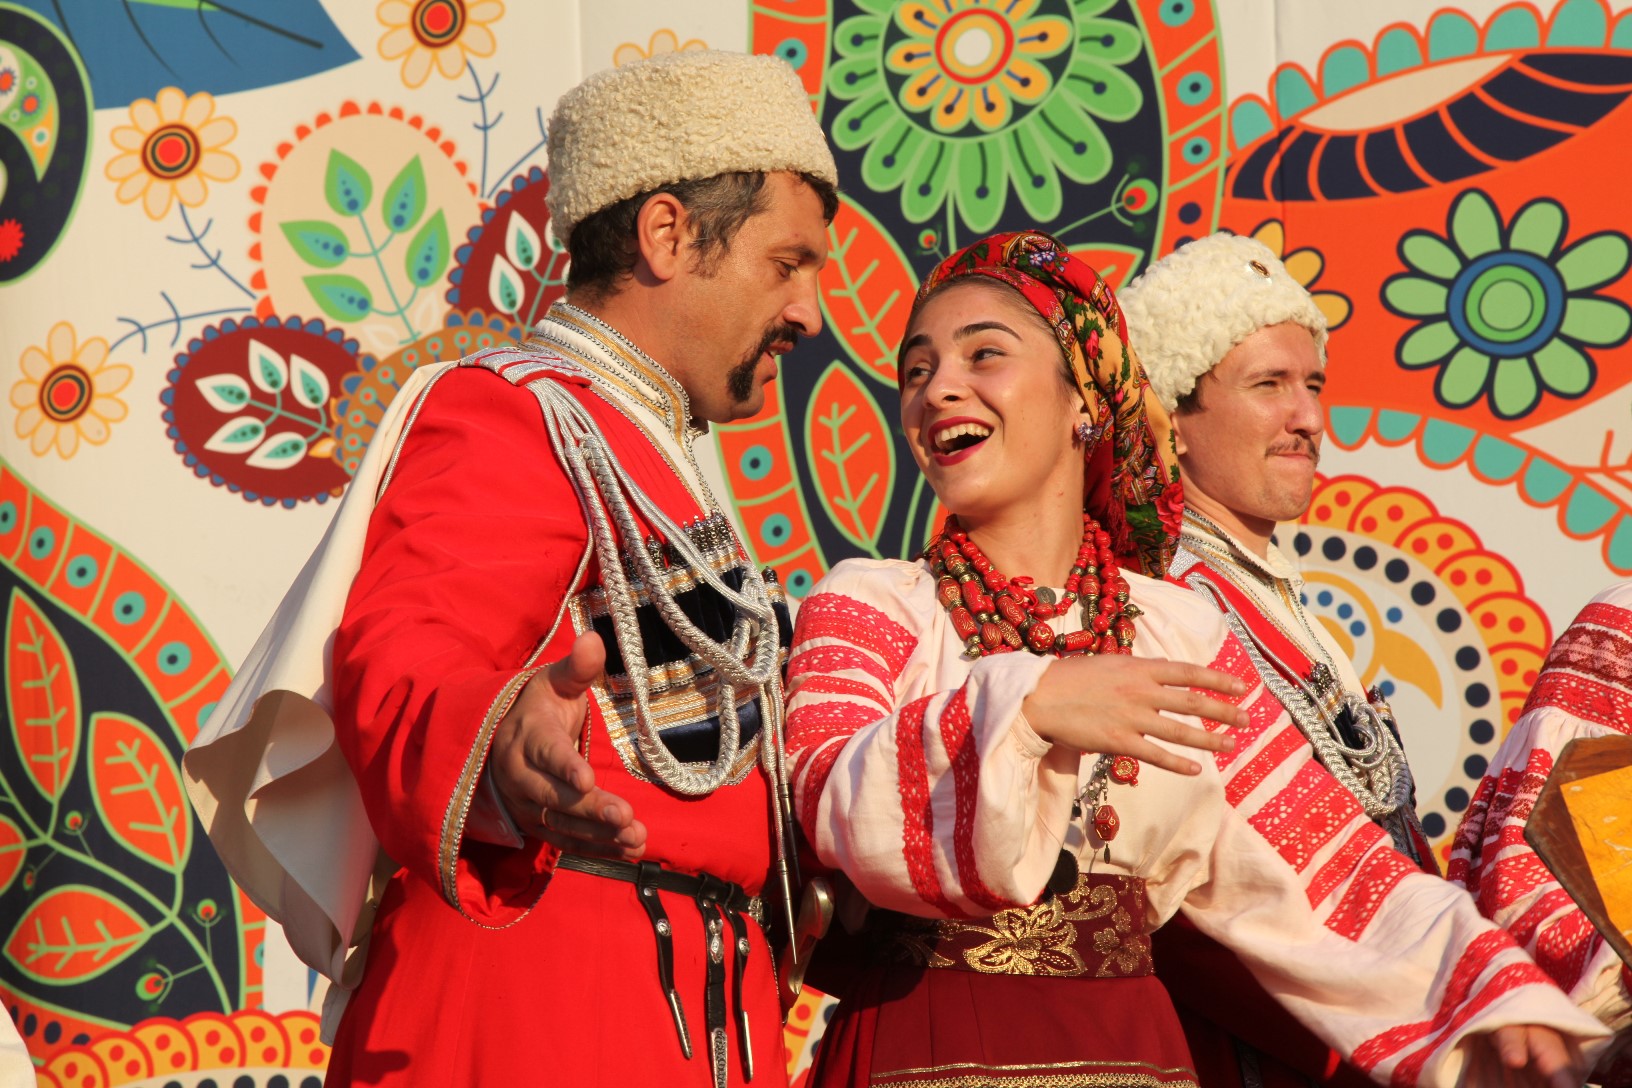 Фестиваль "Русское поле" в 2017 году соберет рекордное количество регионов